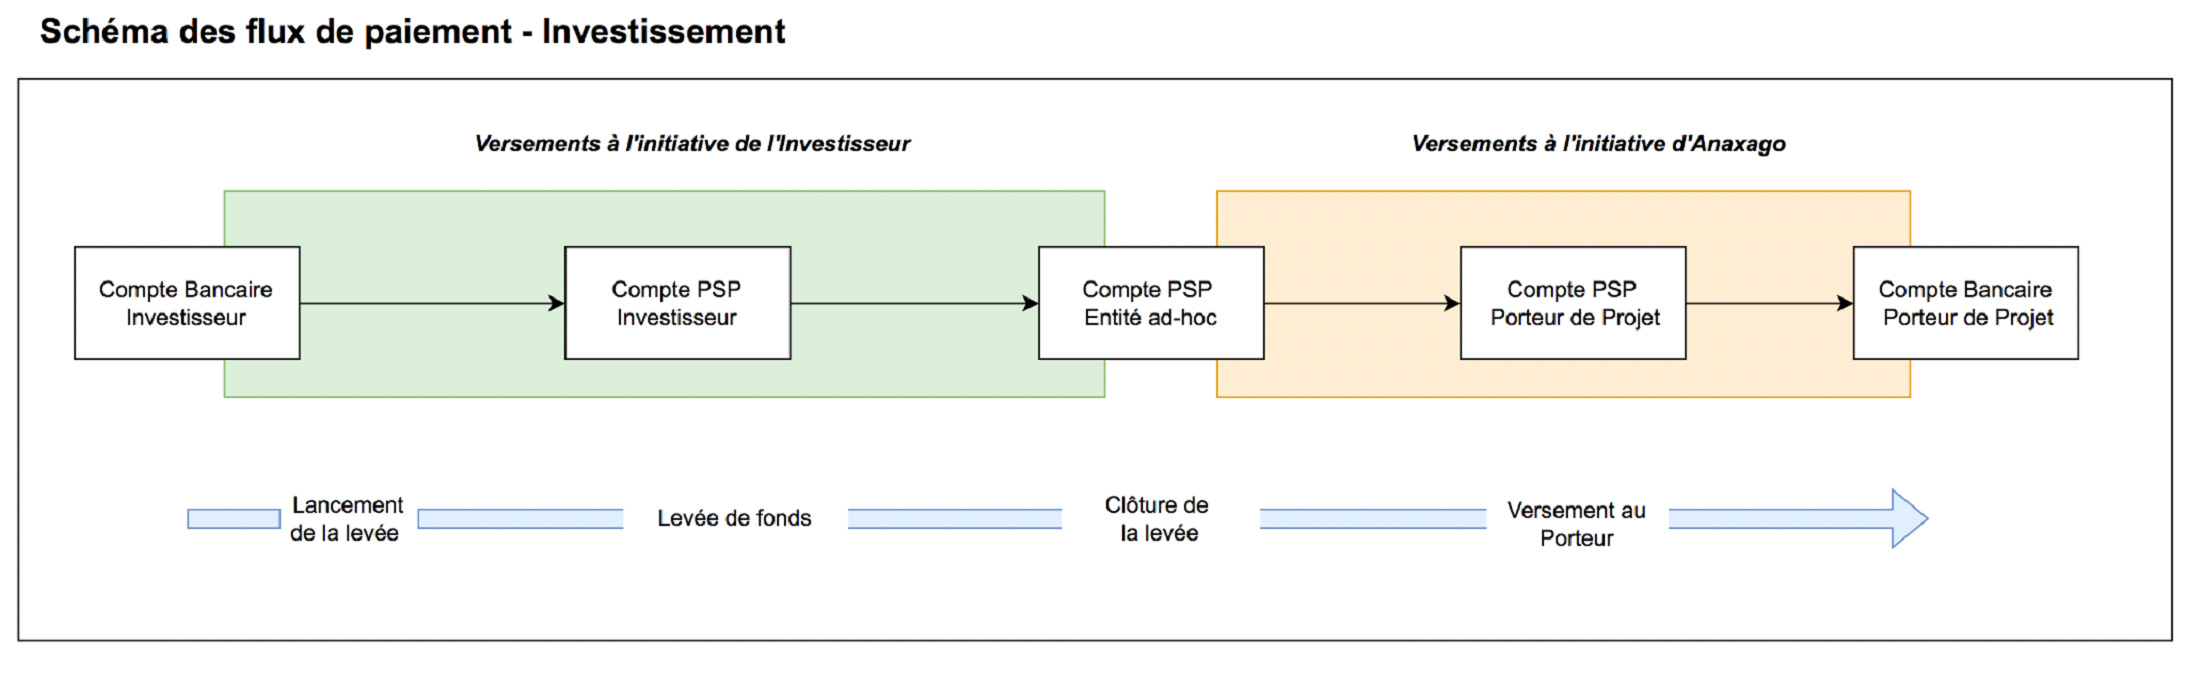 Schemas de flux de paiement: investissement